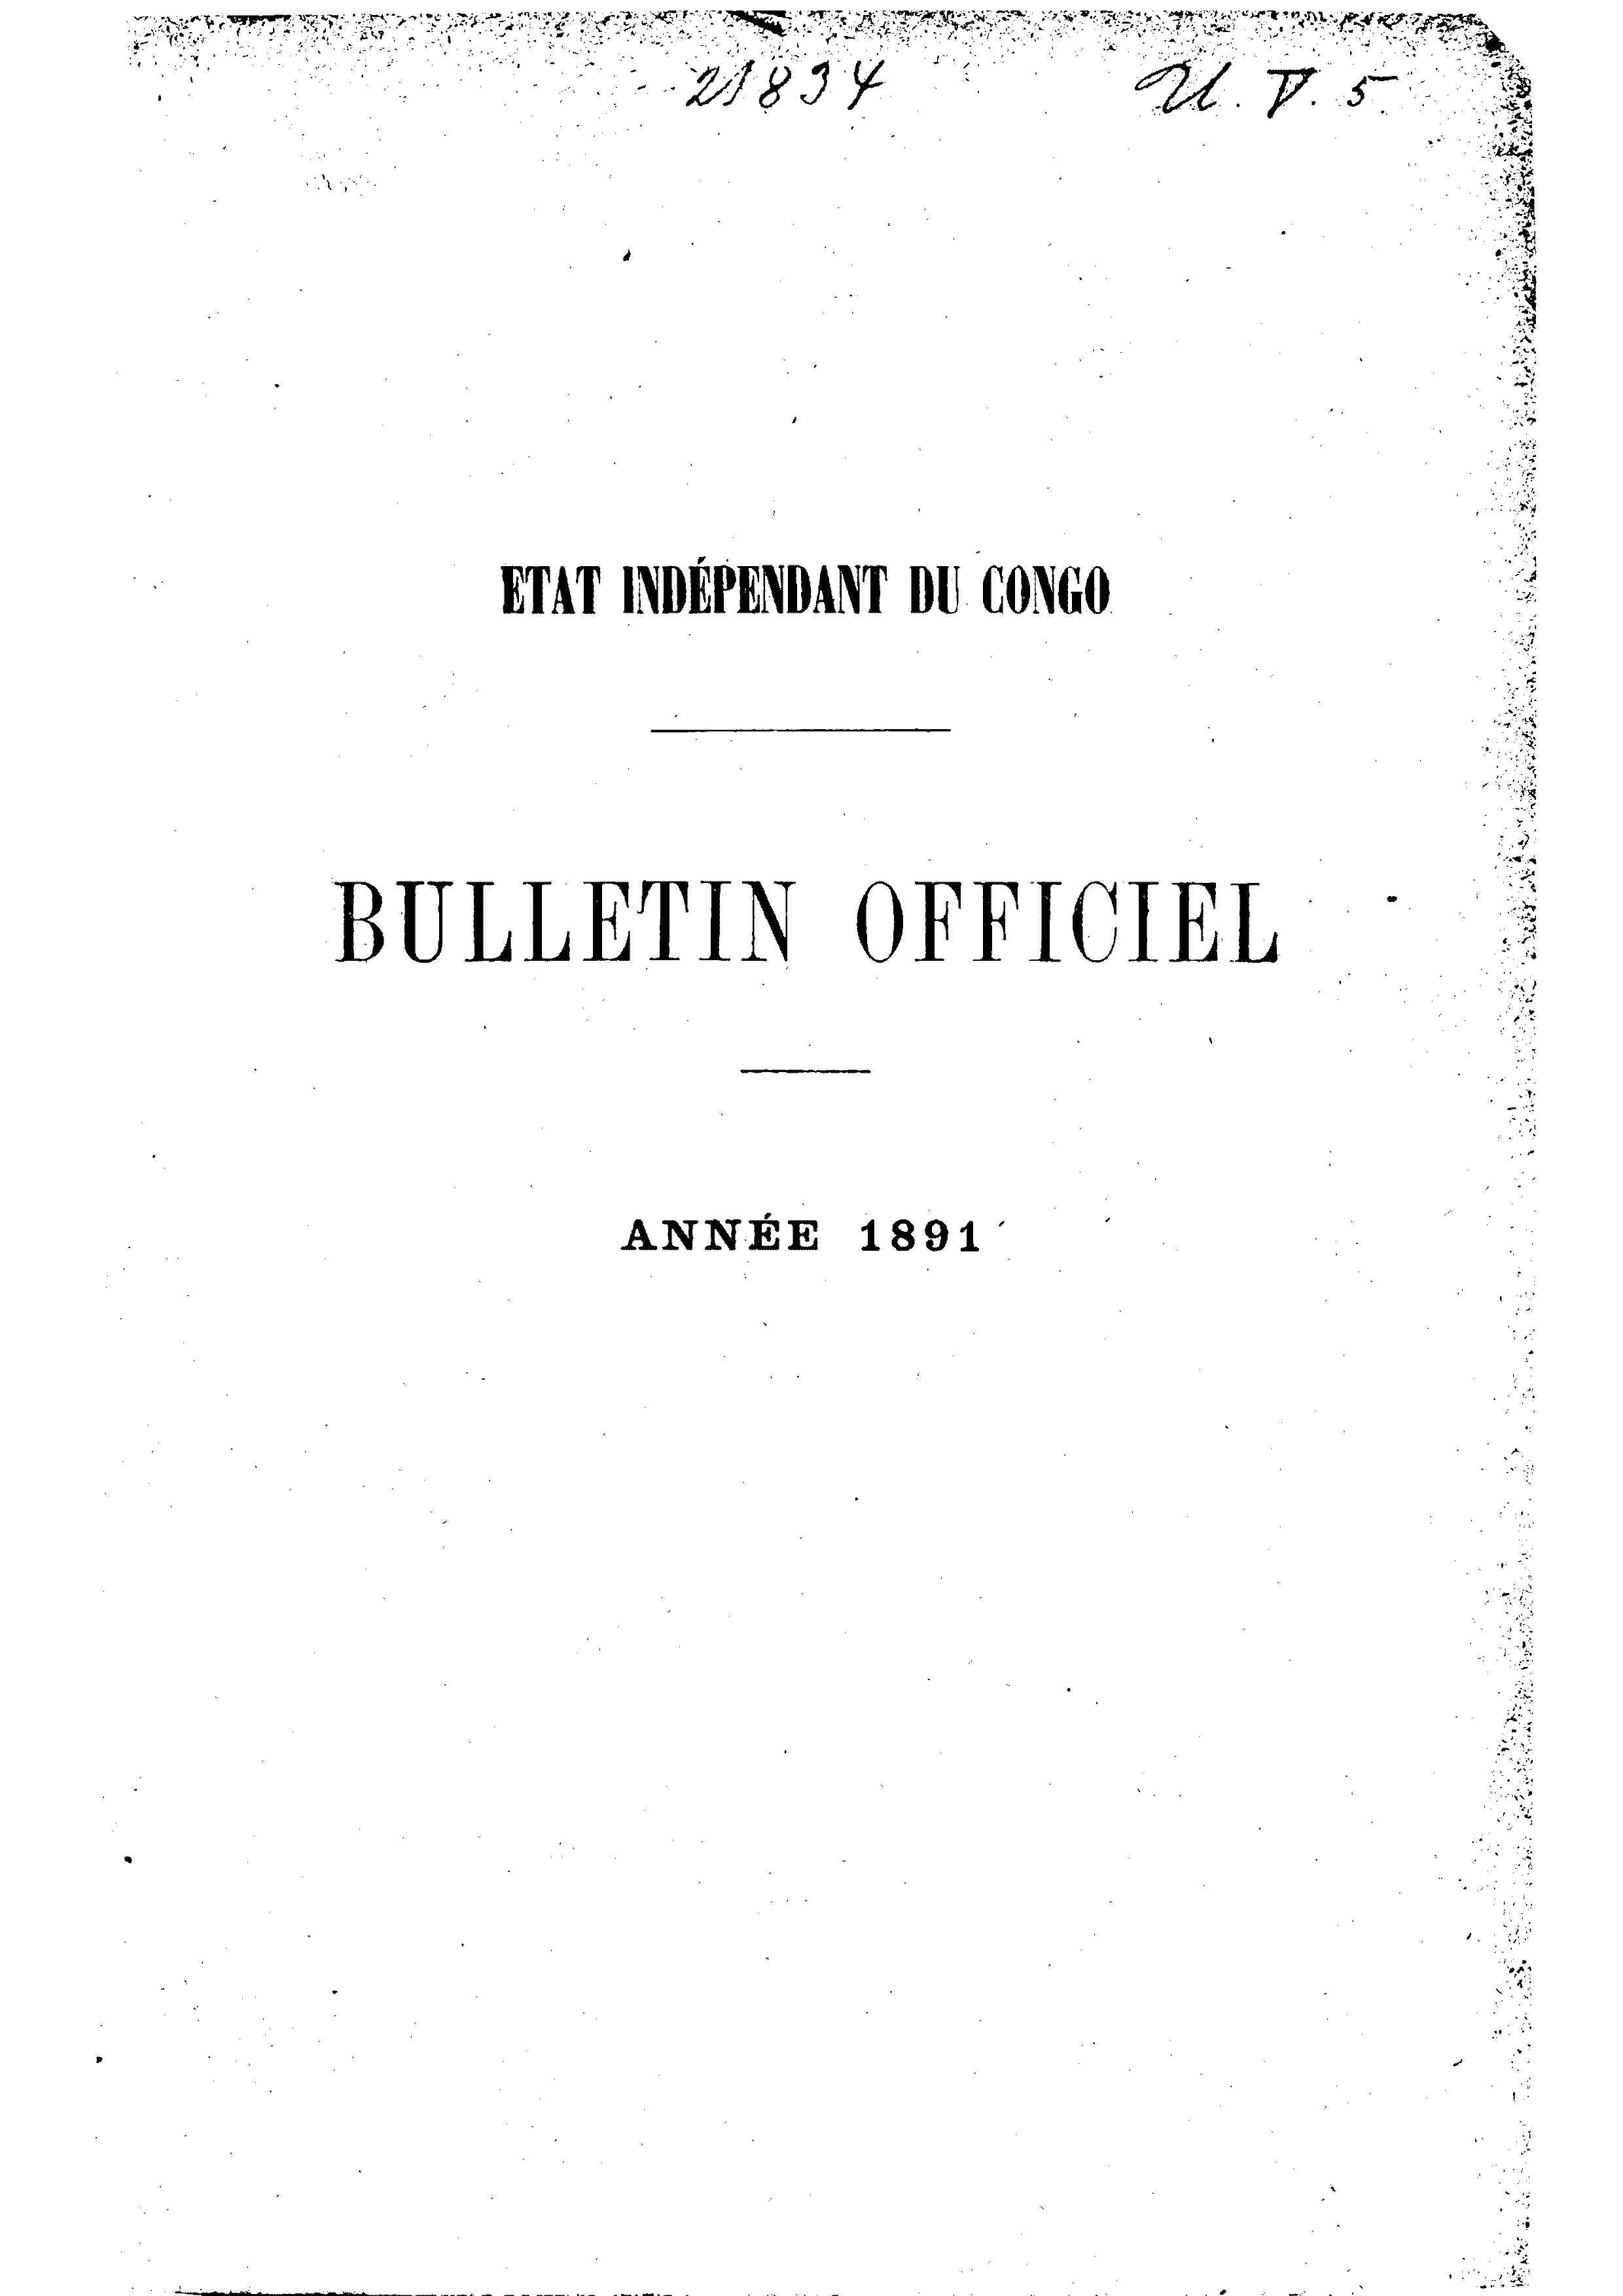 Book cover 202106132406: Etat Indépendant du Congo - roi Léopold II | Etat Indépendant du Congo - Bulletin Officiel – Année 1891